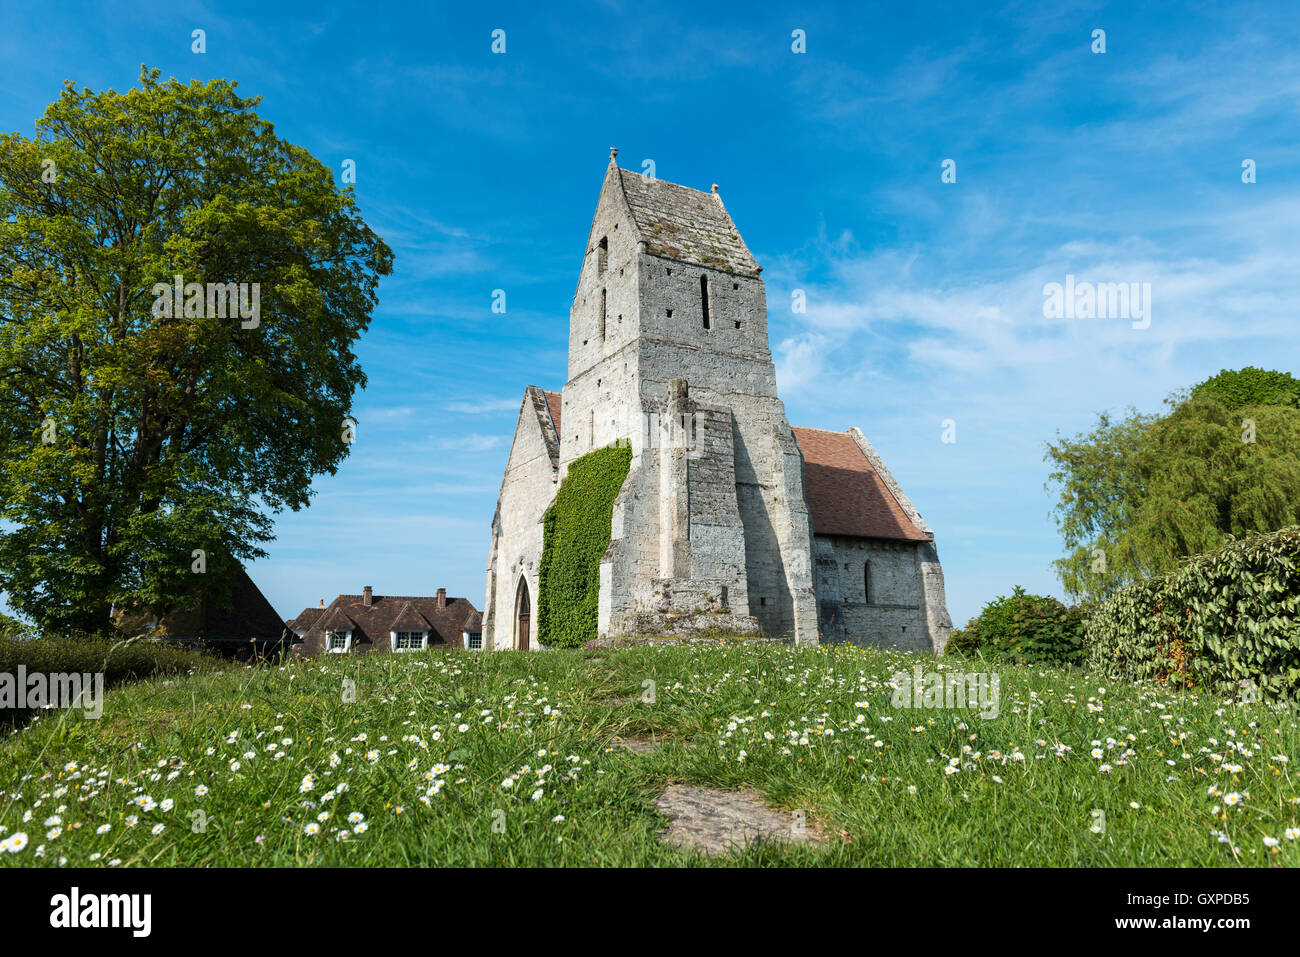 The medieval church, l' Eglise St. Martin de Cricqueboeuf, Calvados, Normandy, France Stock Photo